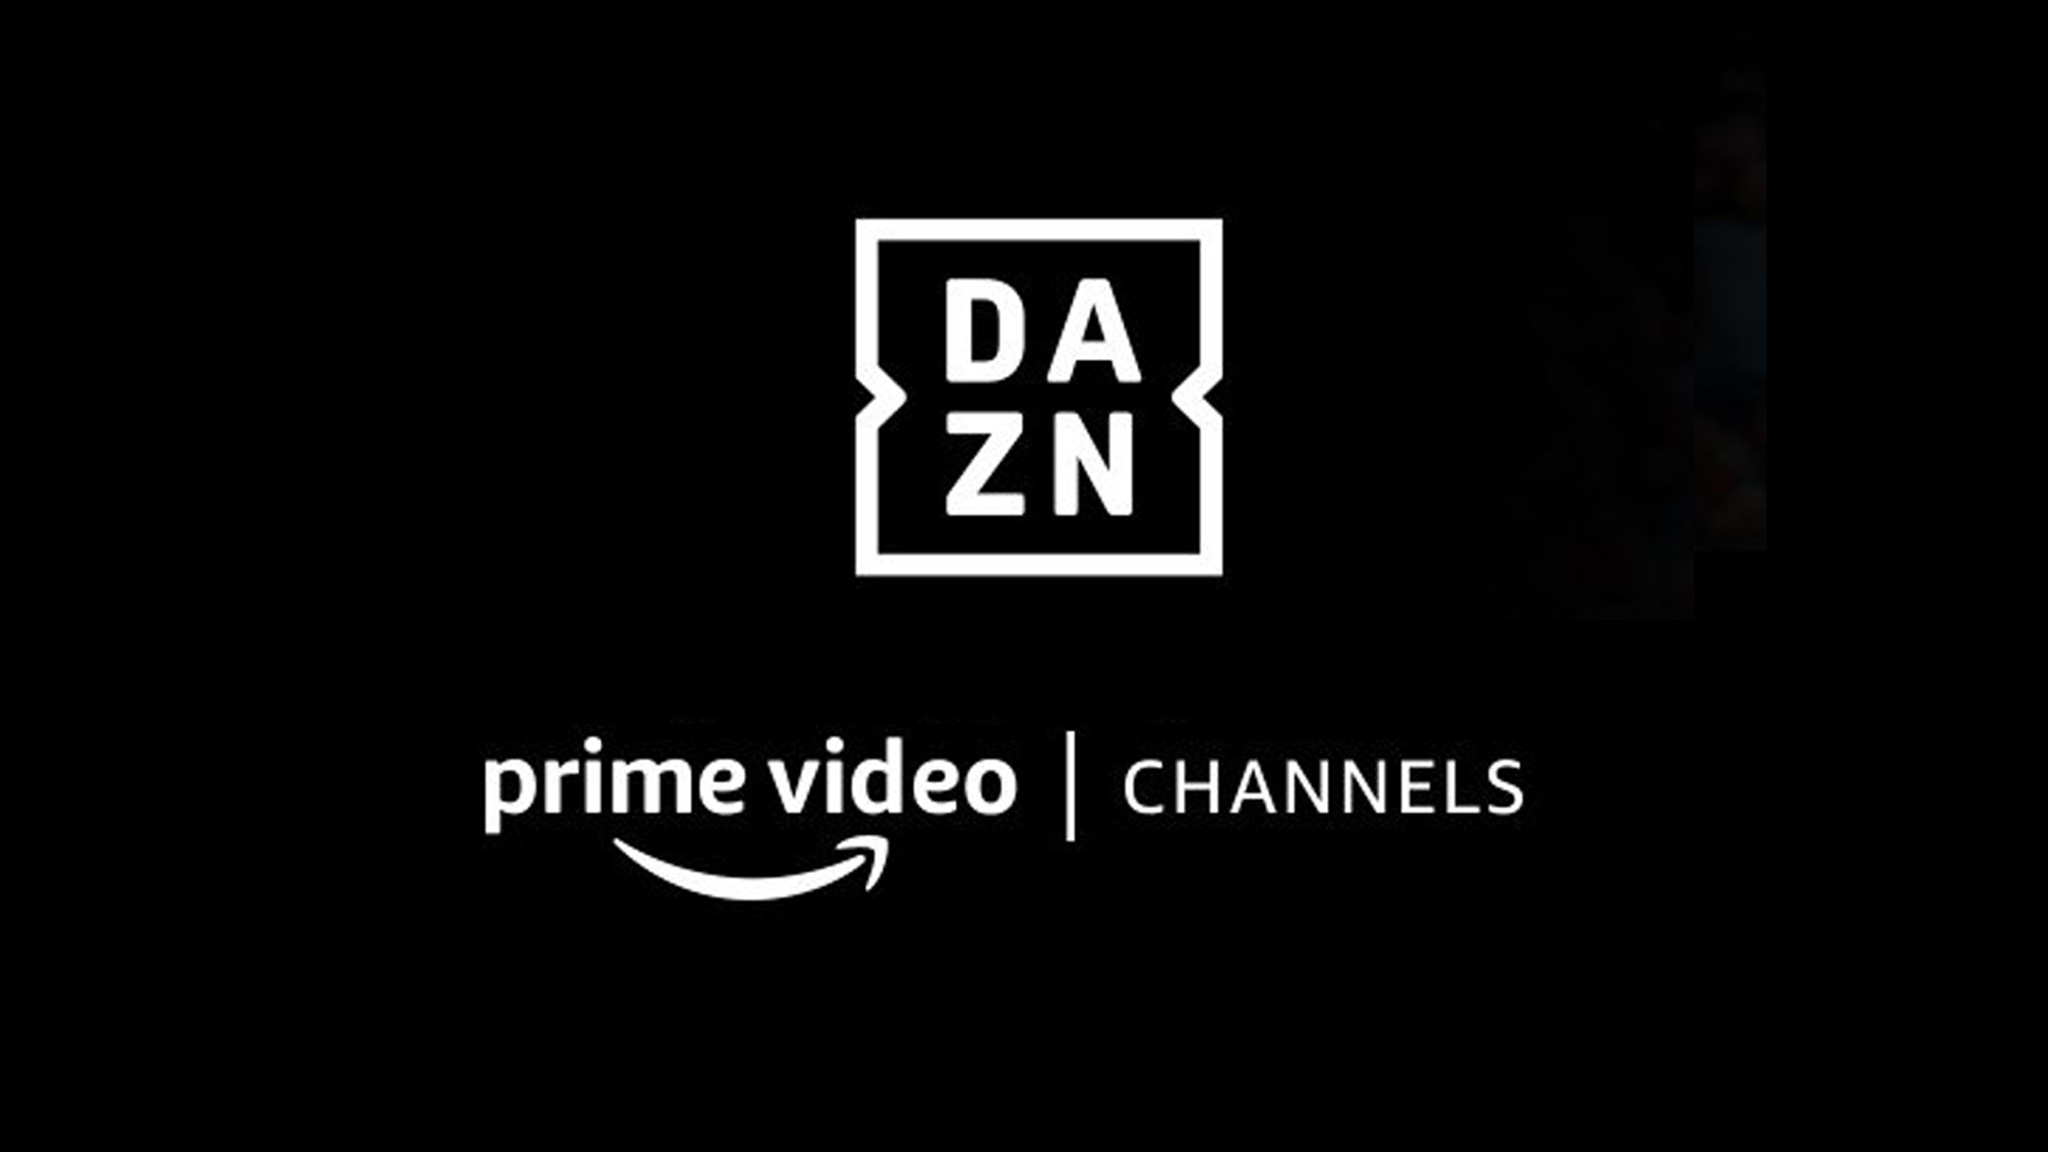 Amazon DAZN jetzt als Prime-Video-Channel verfügbar